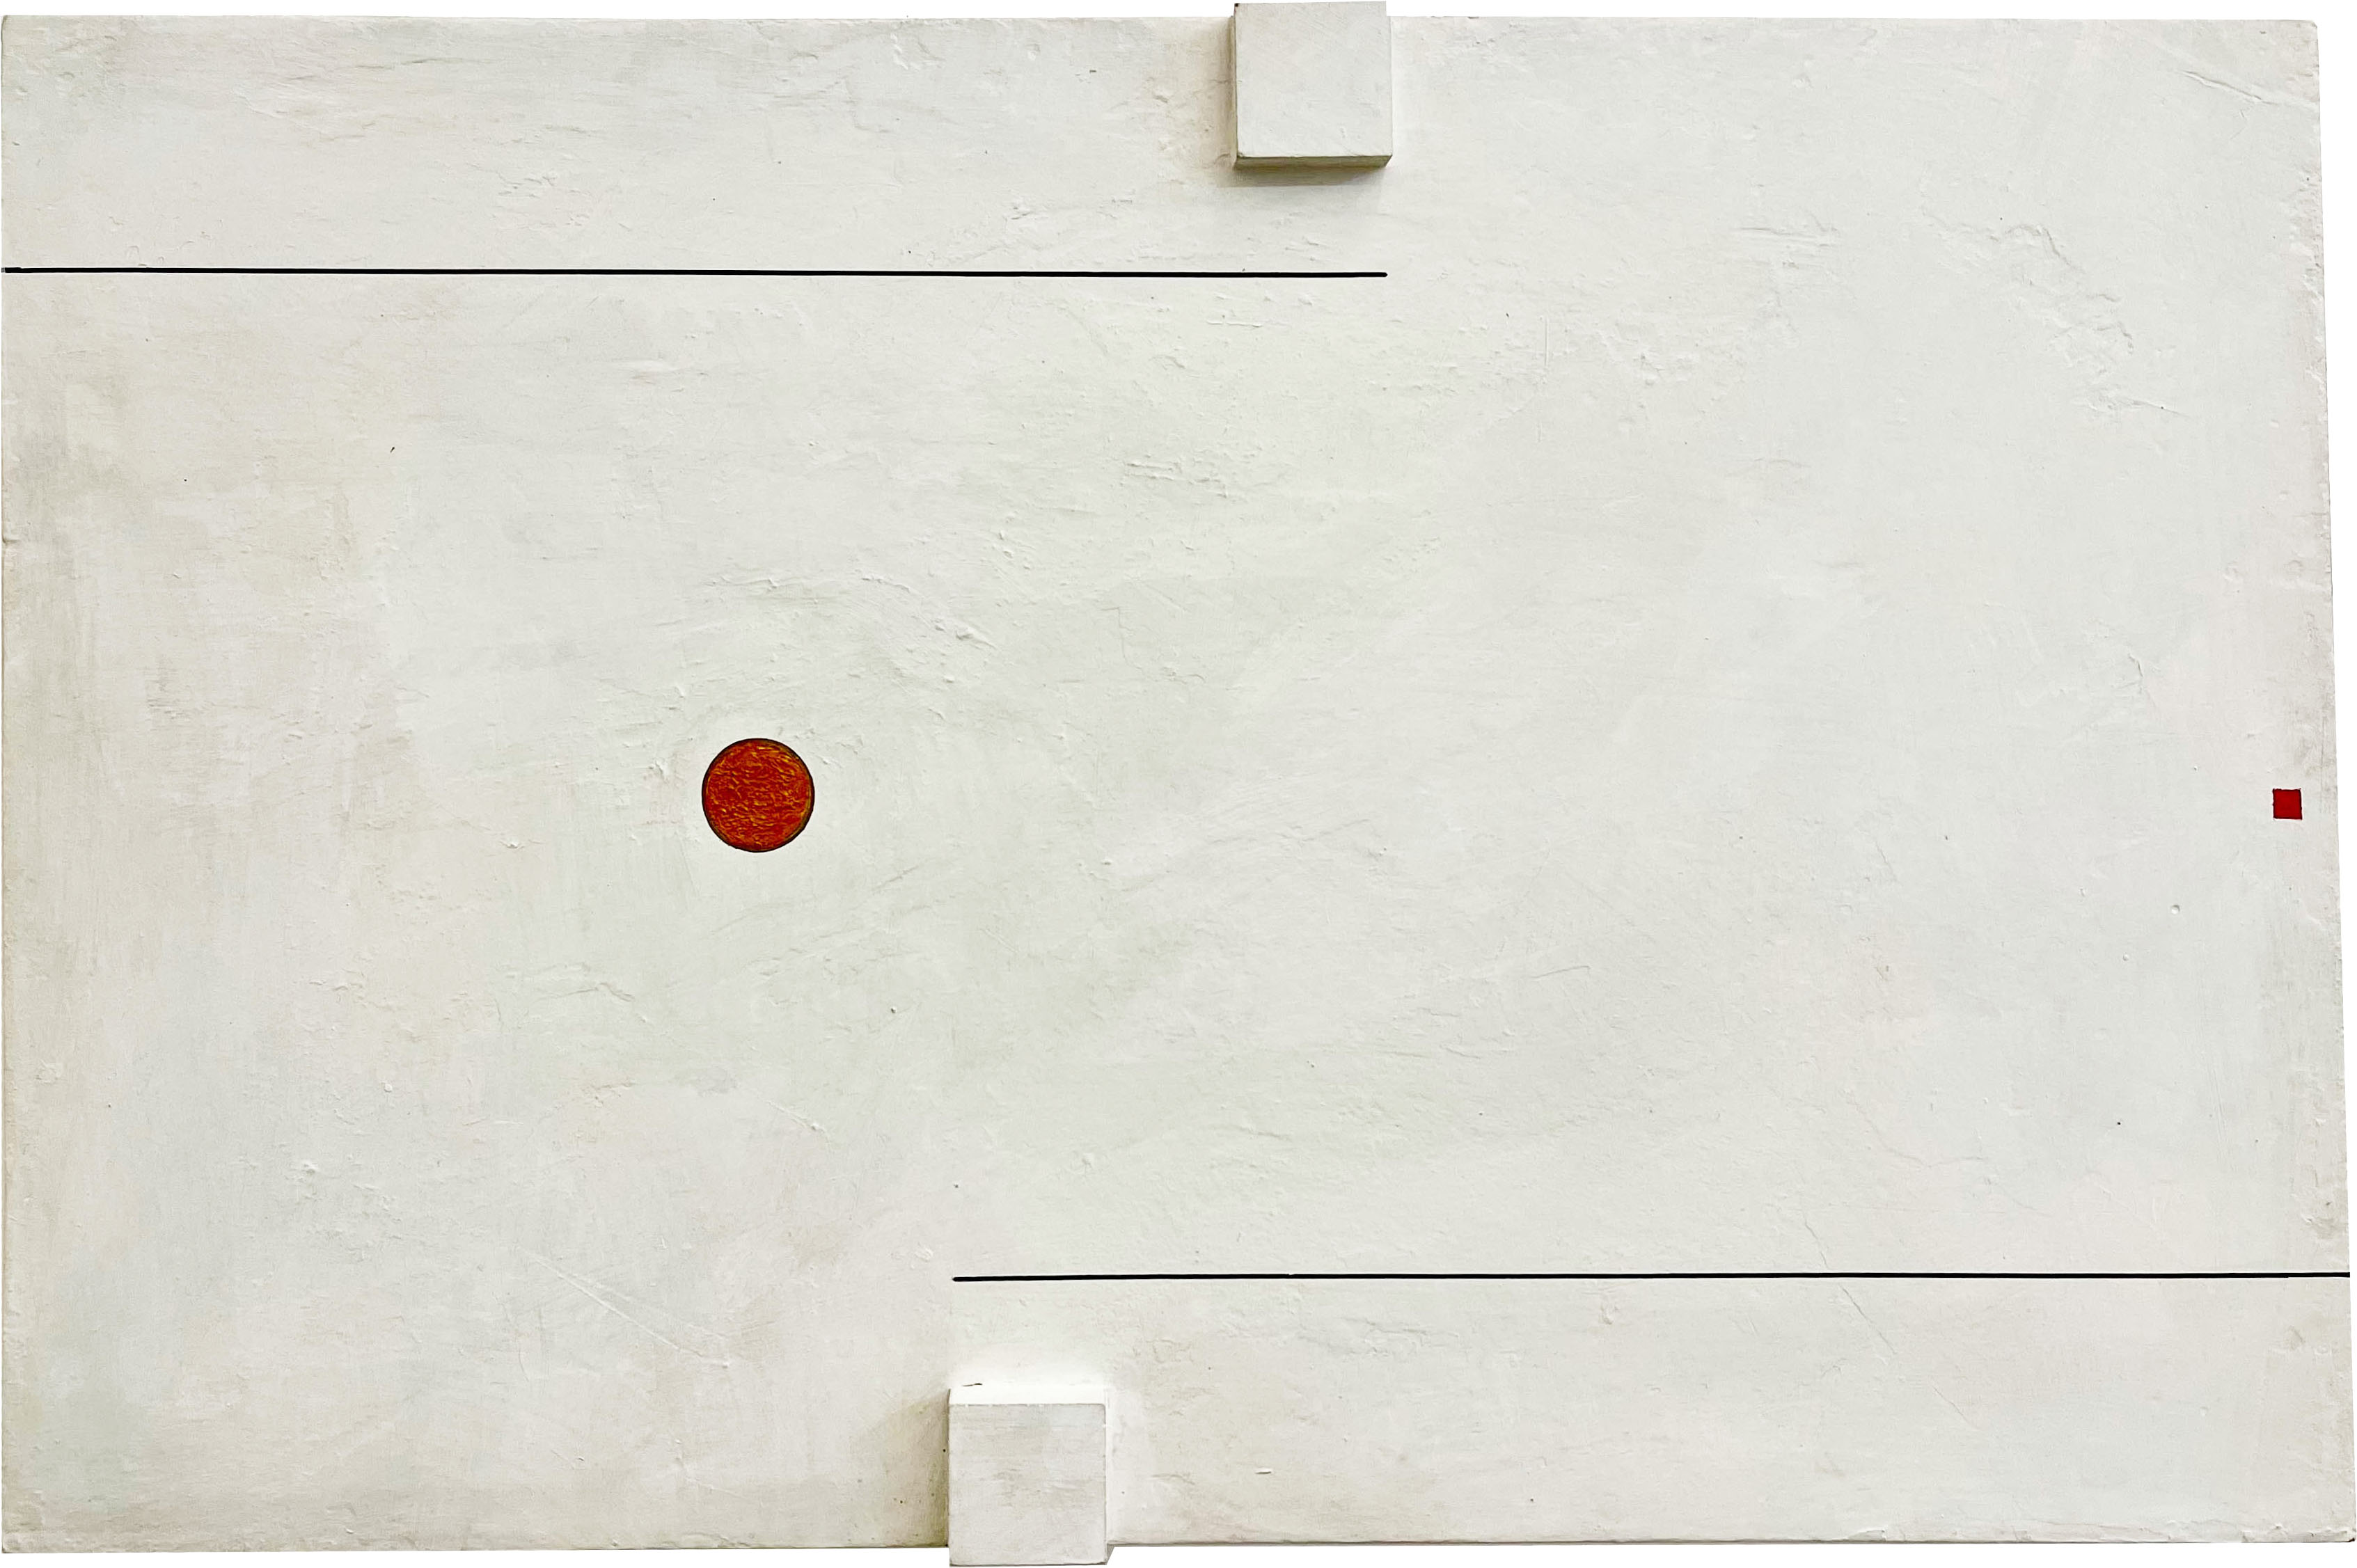 09. Almandrade, Sem títilo, 1979, Acrílica sobre tela e madeira, 31 x 47 cm